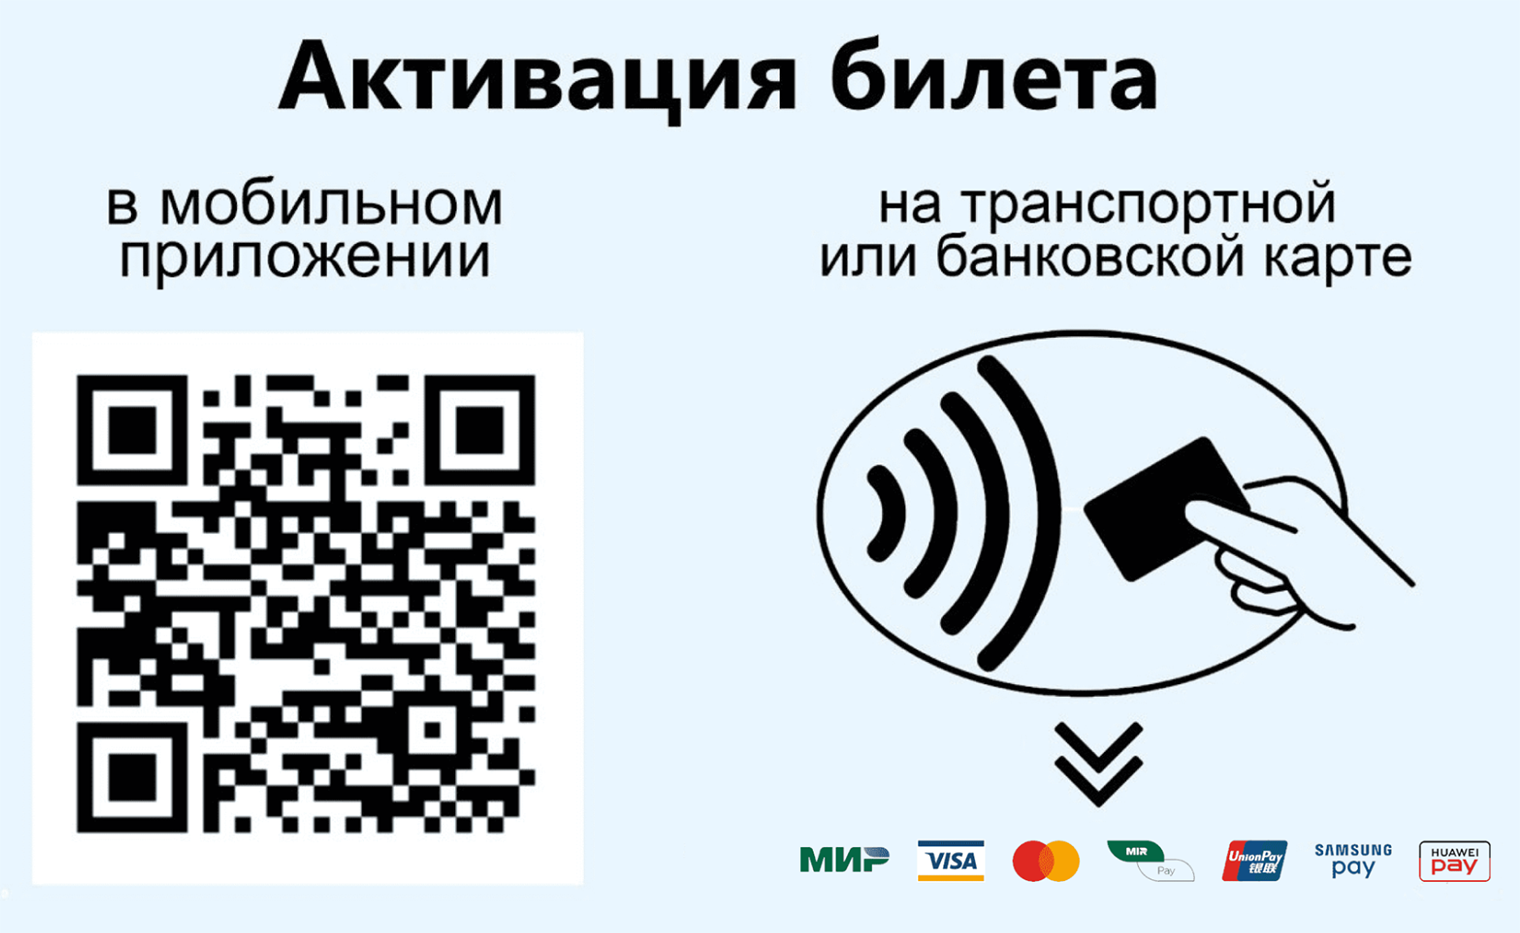 Так выглядит экран валидатора на станции МЦД. Активировать поездку можно с помощью мобильного приложения, банковской или транспортной картой. Источник: mosmetro.ru